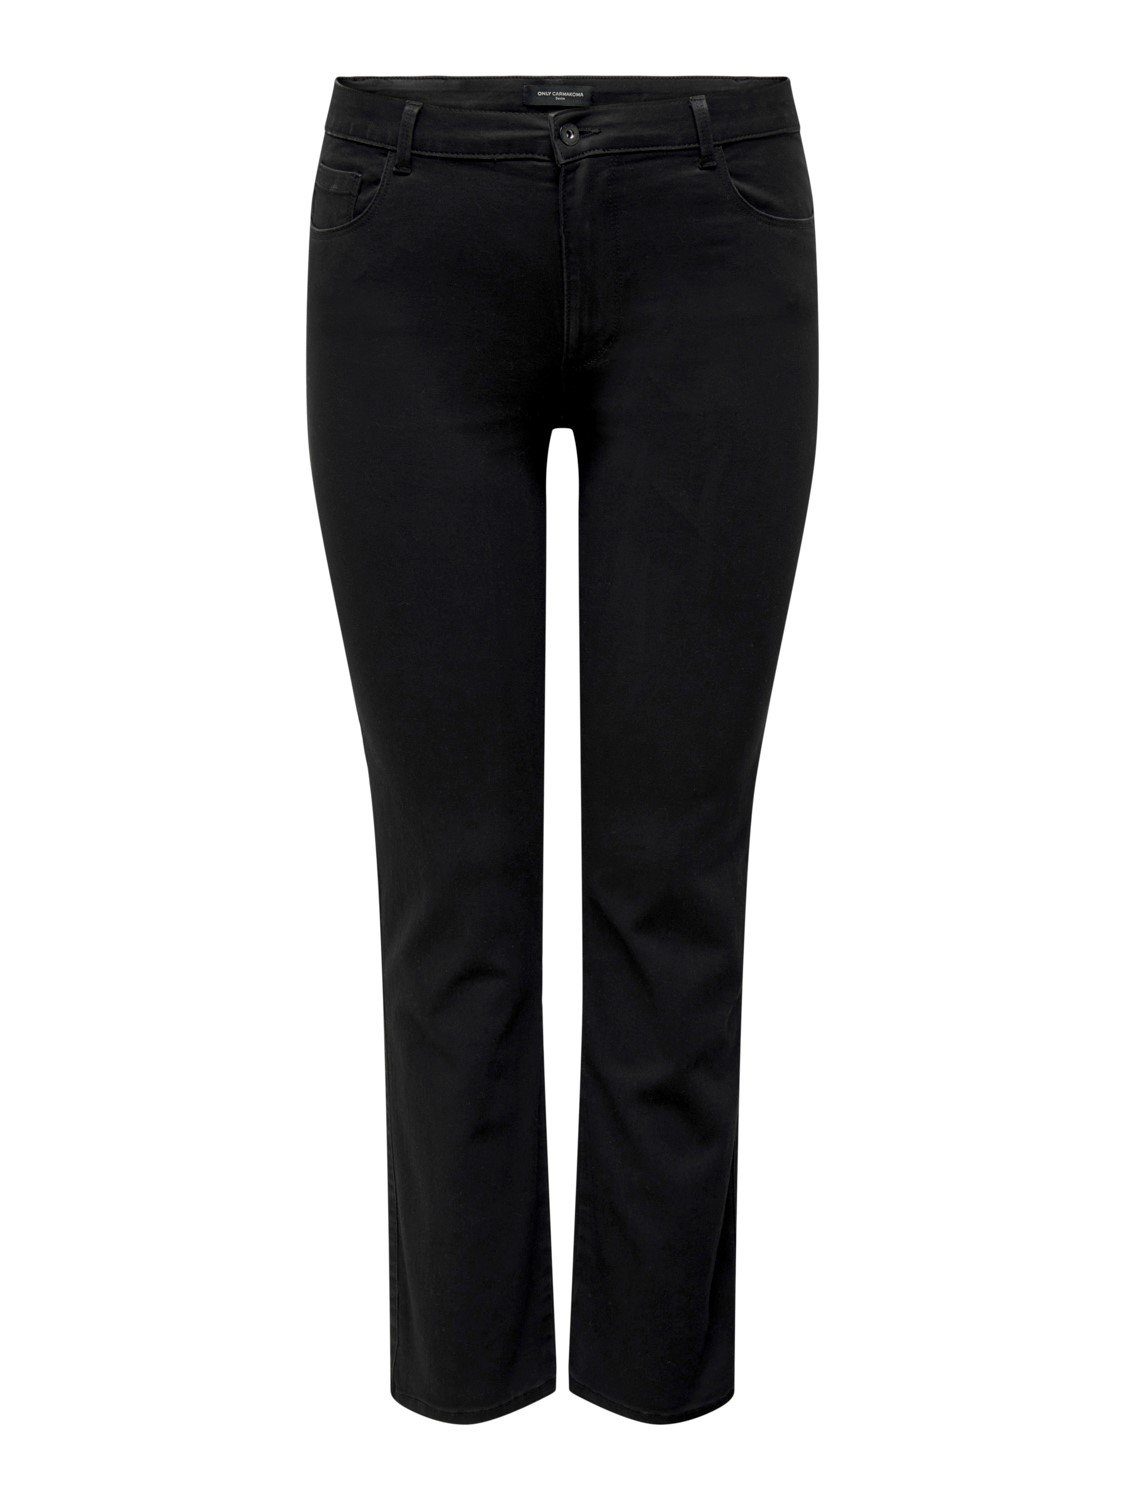 BLACK Skinny-fit-Jeans Stretch mit großen CARAUGUSTA in Größen ONLY